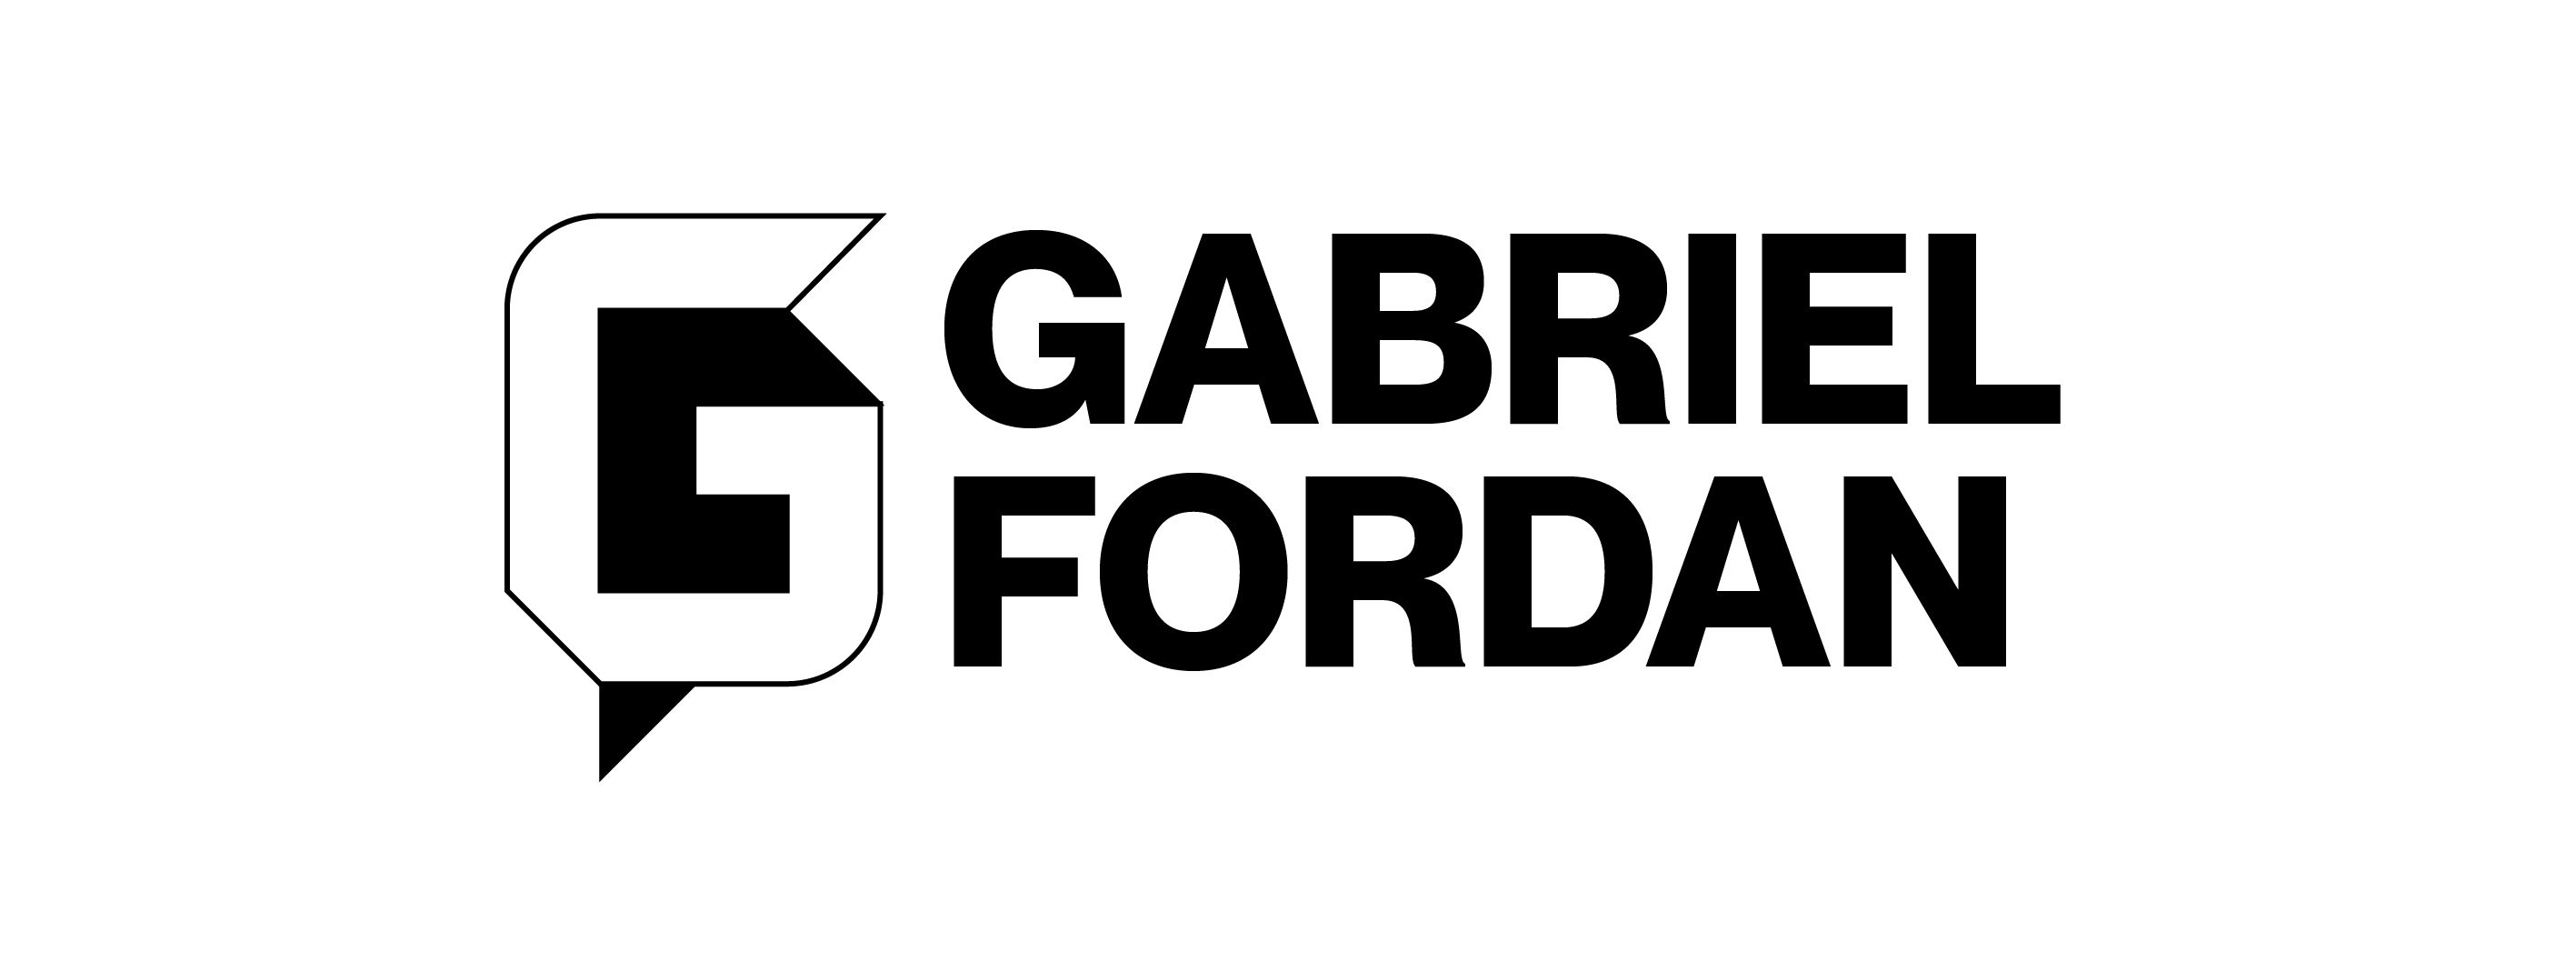 Gabriel Fordan